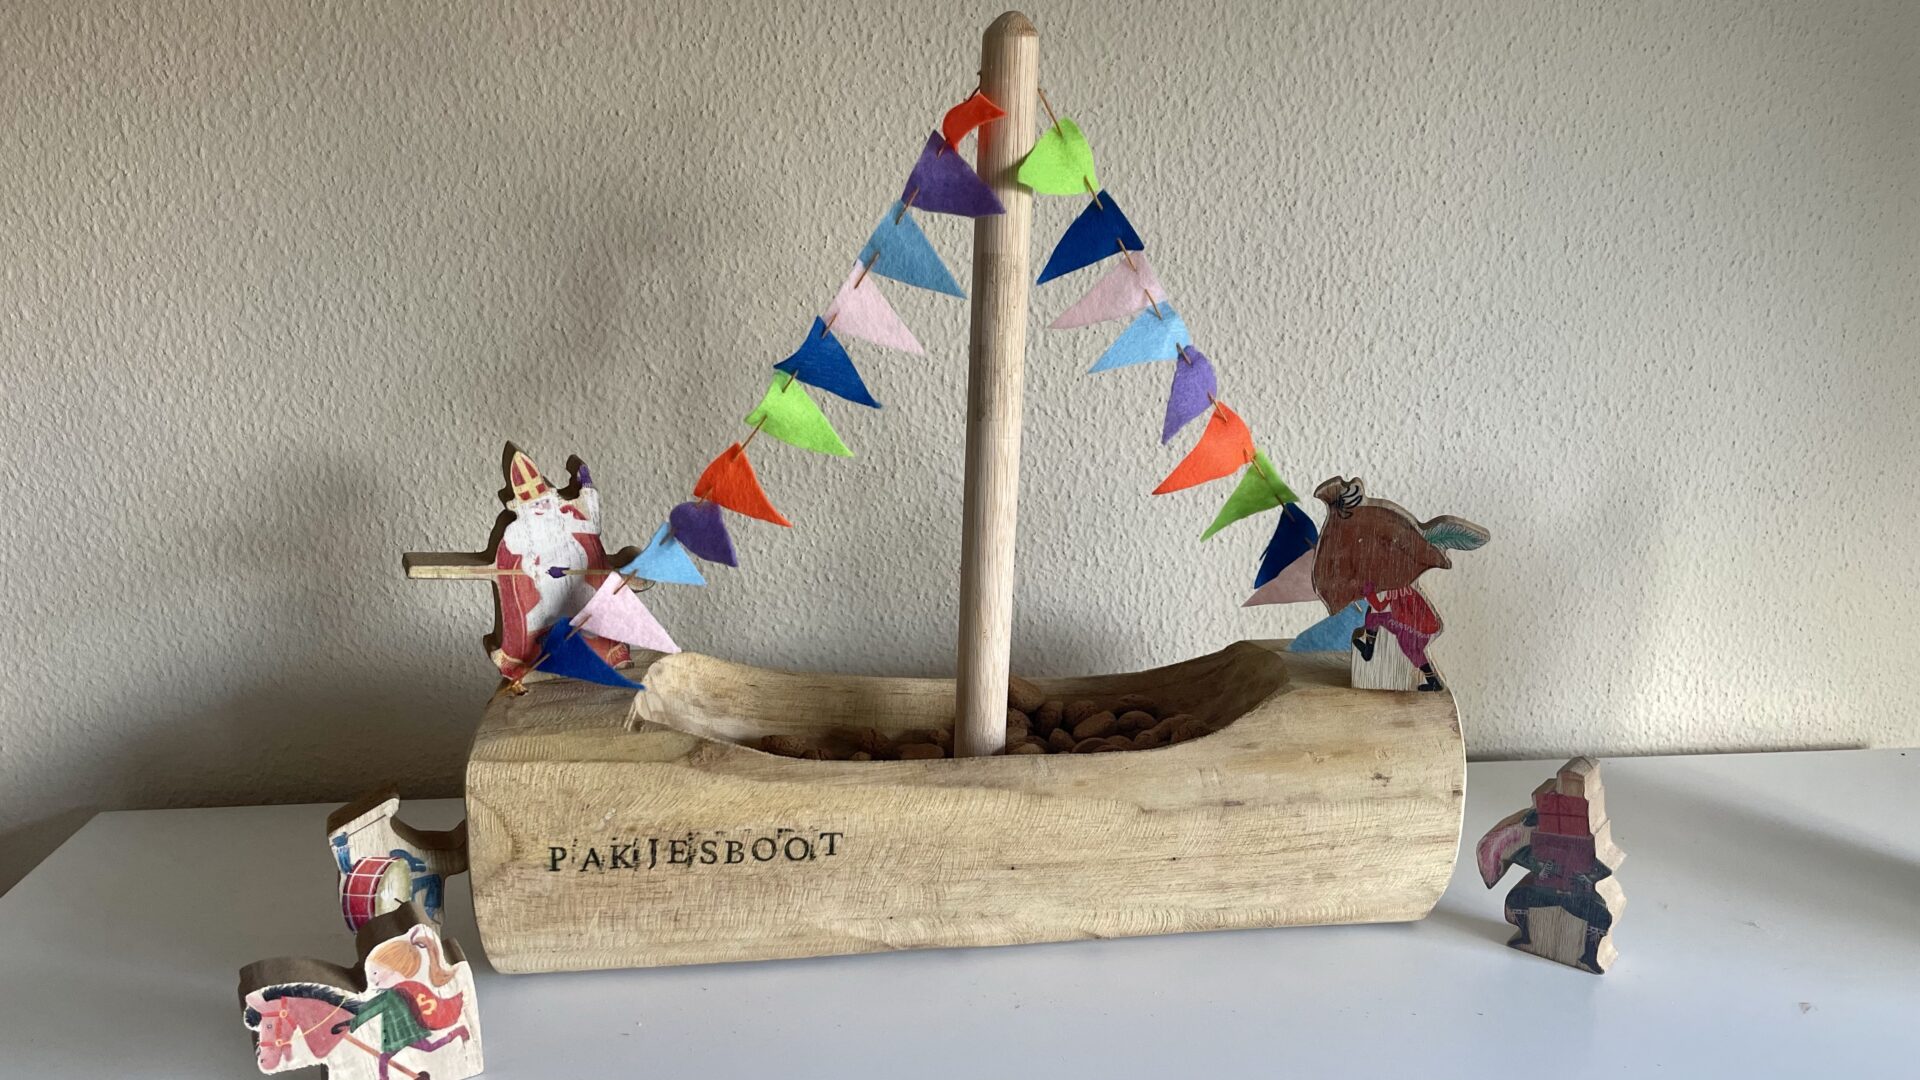 Zeestraat hengel mouw DIY: Maak je eigen houten pakjesboot voor Sinterklaas -  KinderKoopjesjager.nl